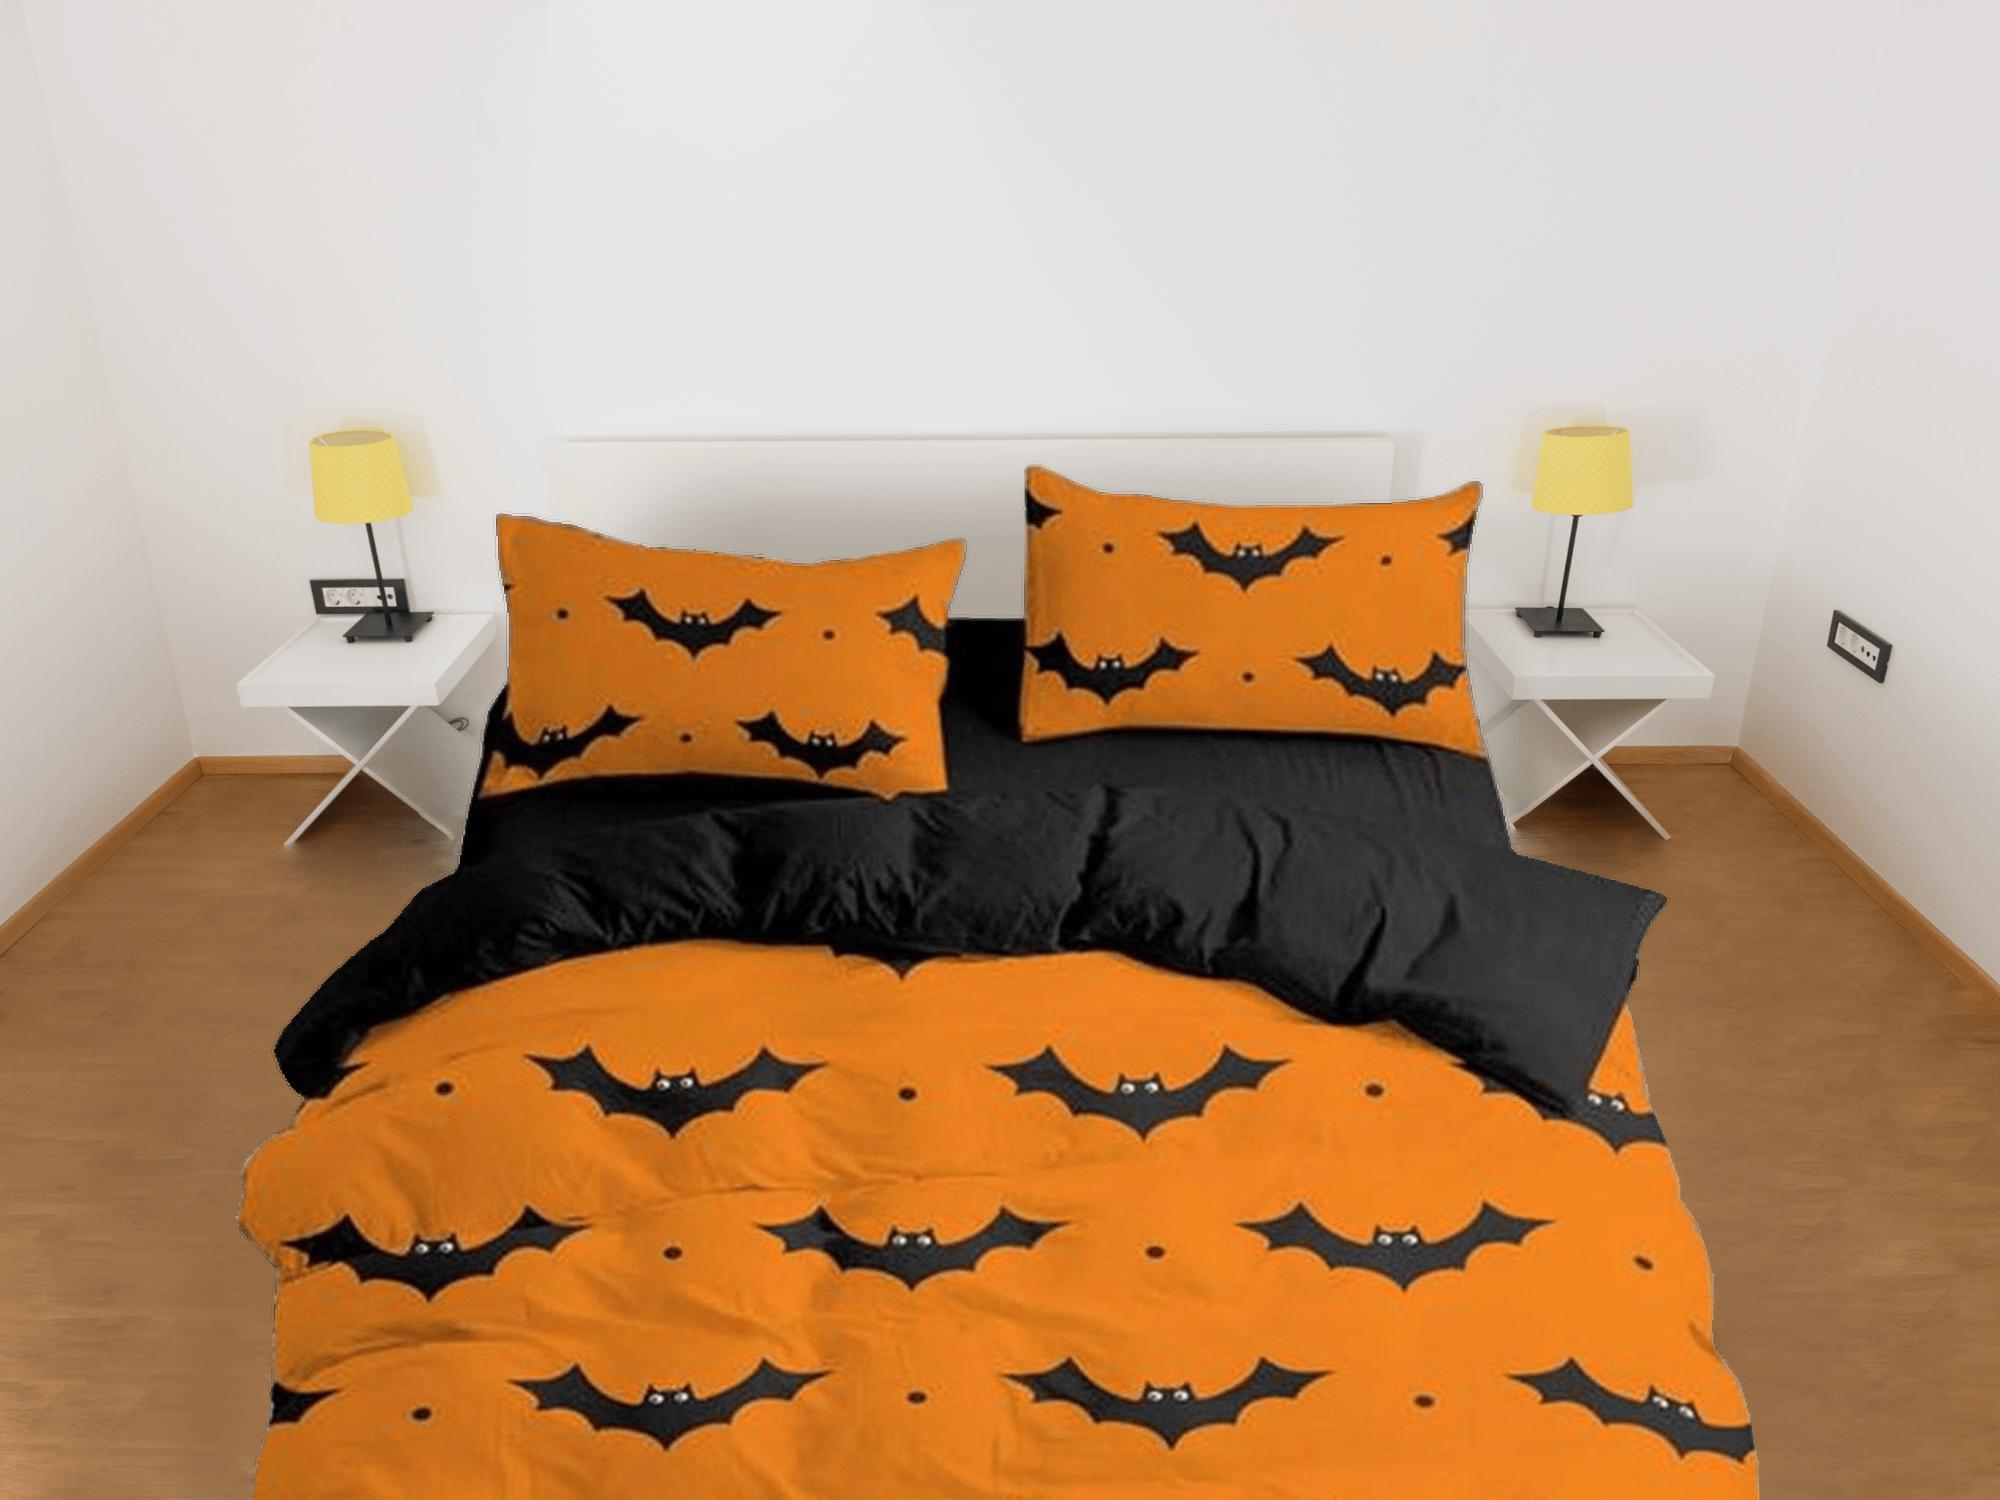 daintyduvet Bat halloween full size bedding & pillowcase, orange duvet cover set dorm bedding, halloween decor, nursery toddler bedding, halloween gift